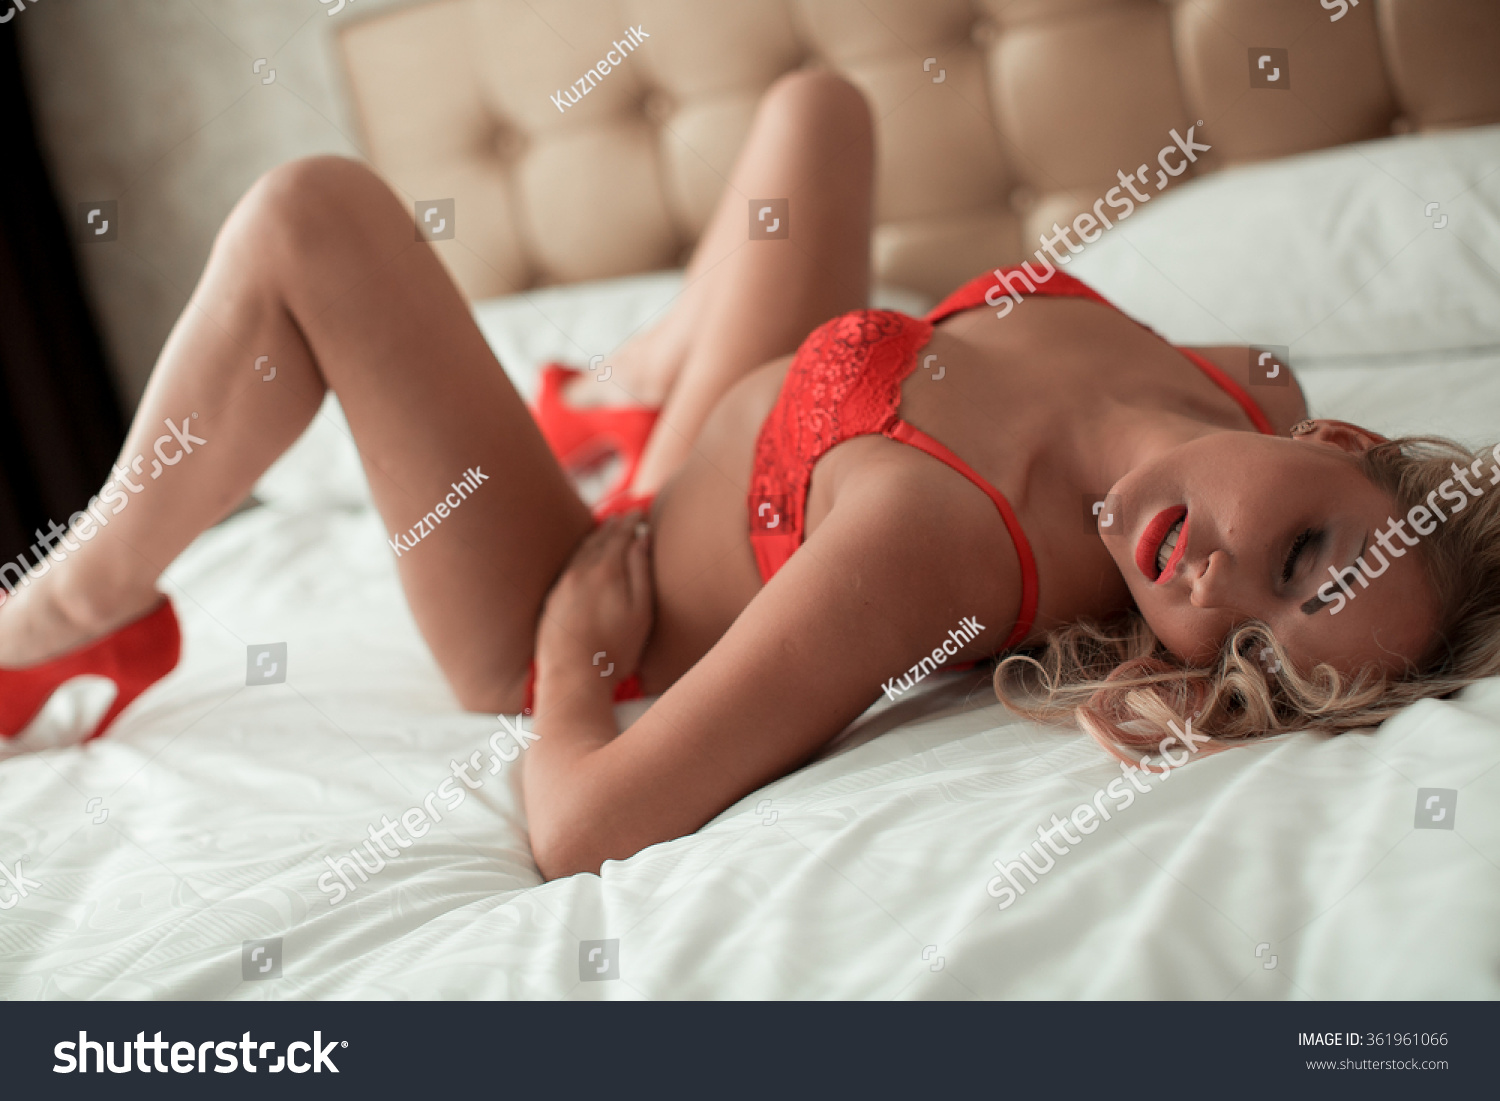 Sexy erotic lingerie